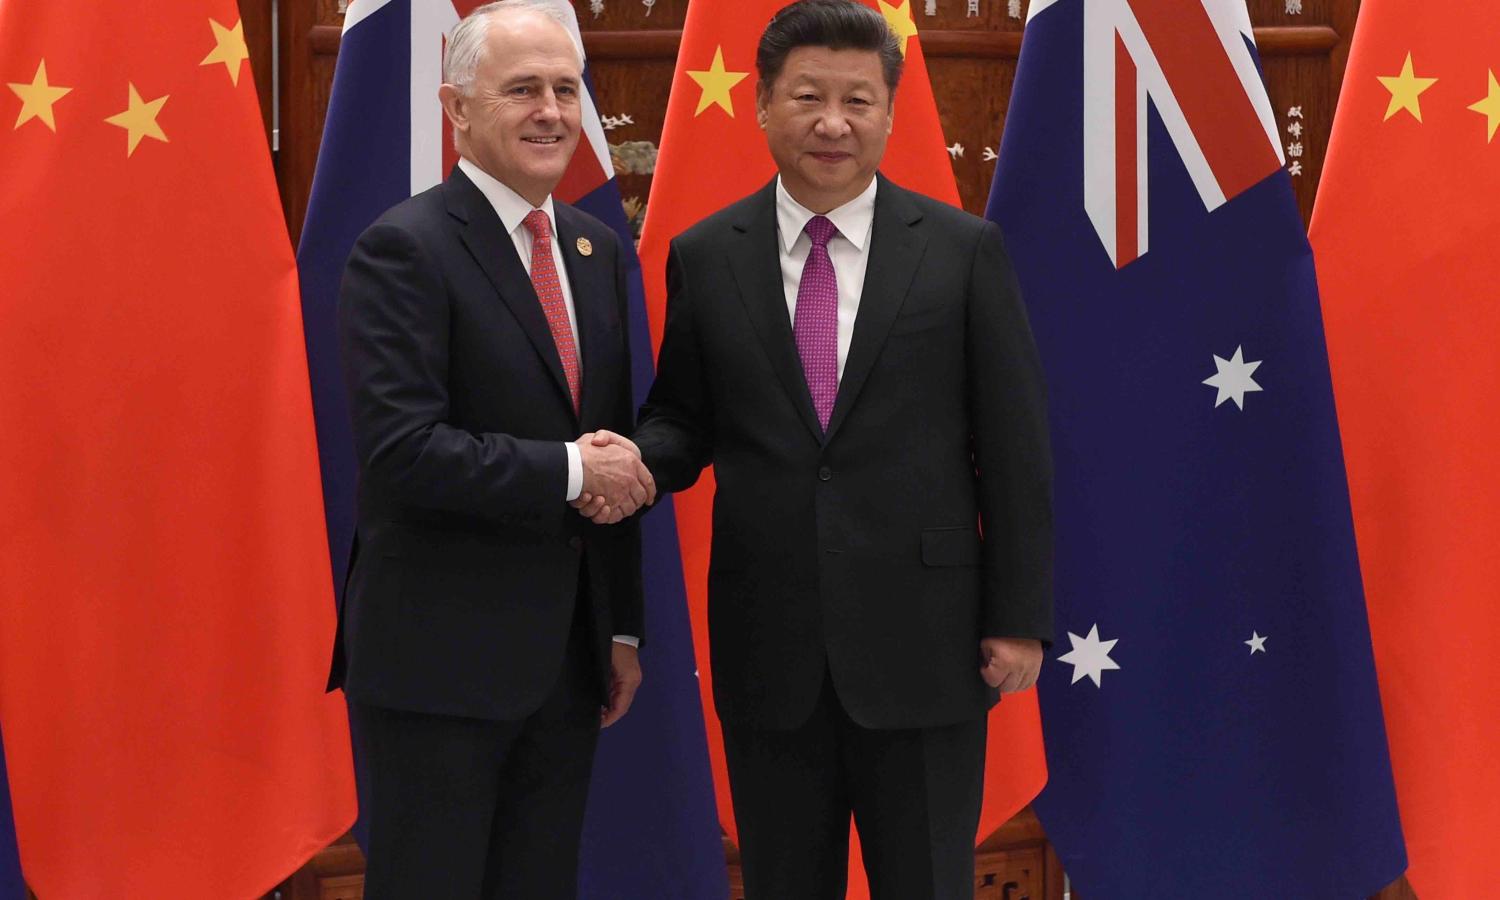 Malcolm Turnbull and Xi Jinping in Hangzhou, China, 4 September 2016 (Photo: Wang Zhou – Pool/Getty)